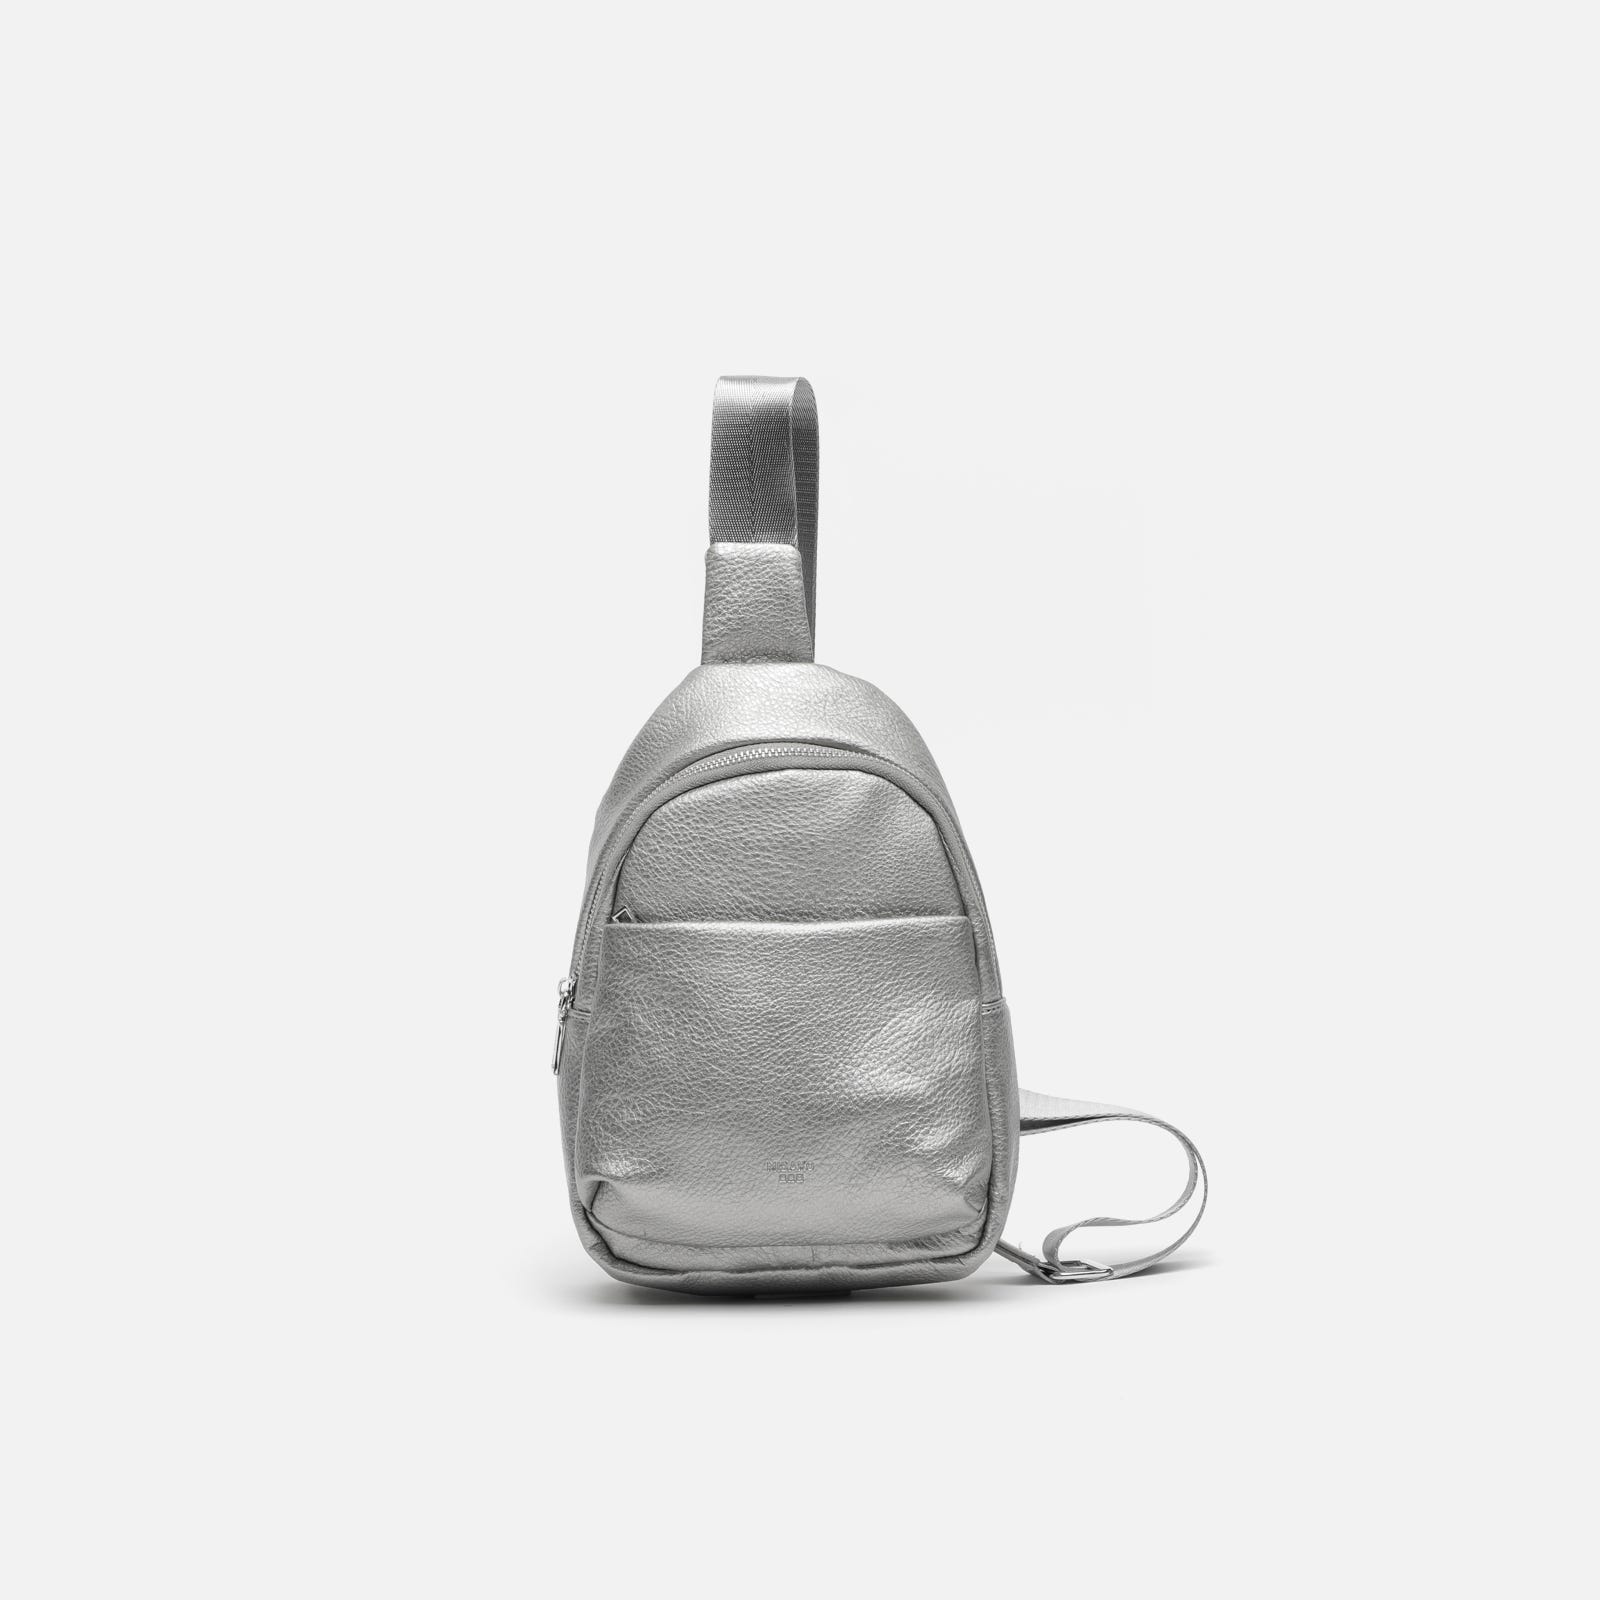 Small shoulder bag backpack